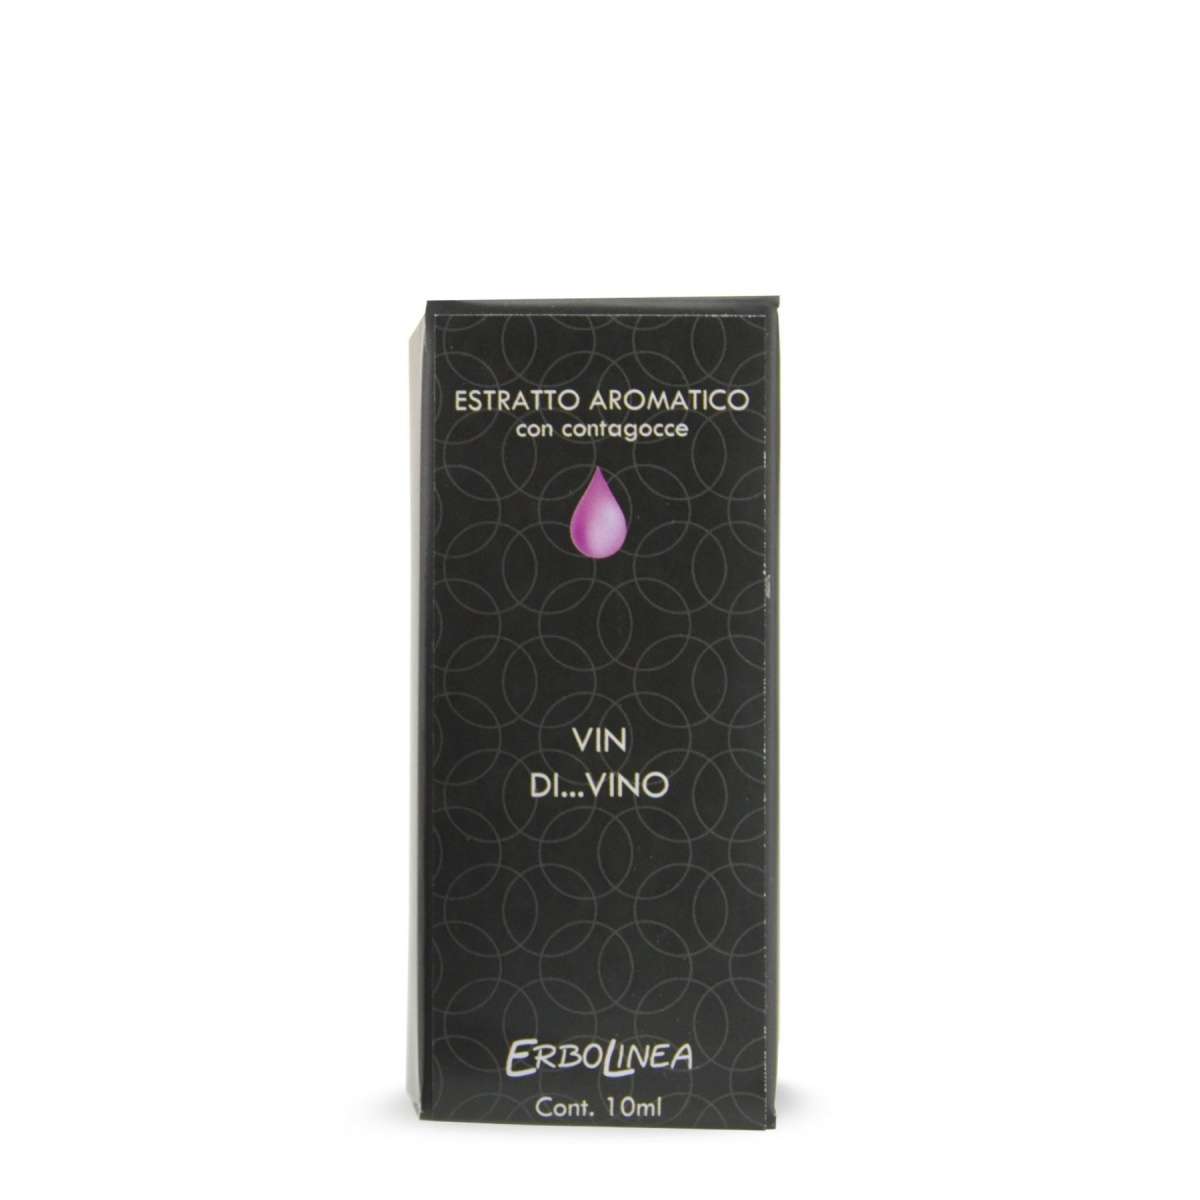 Immagine del prodotto Estratto Aromatico con Contagocce Vin...Divino 10 ml | Erbolinea